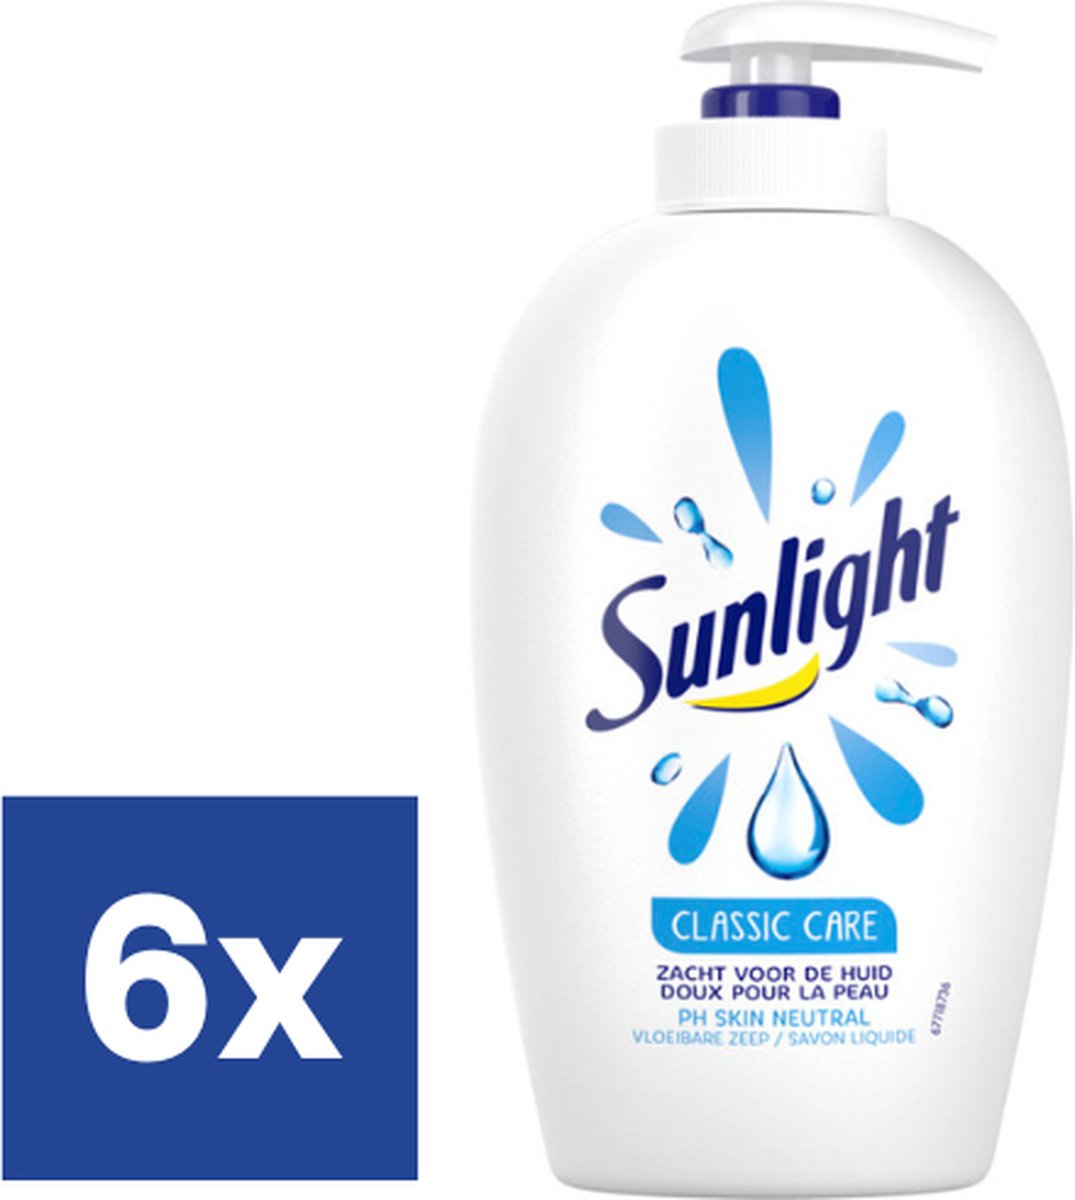 Sunlight Classic Care - 6 x 250 ml - Savon pour les mains - Pack économique  | bol.com